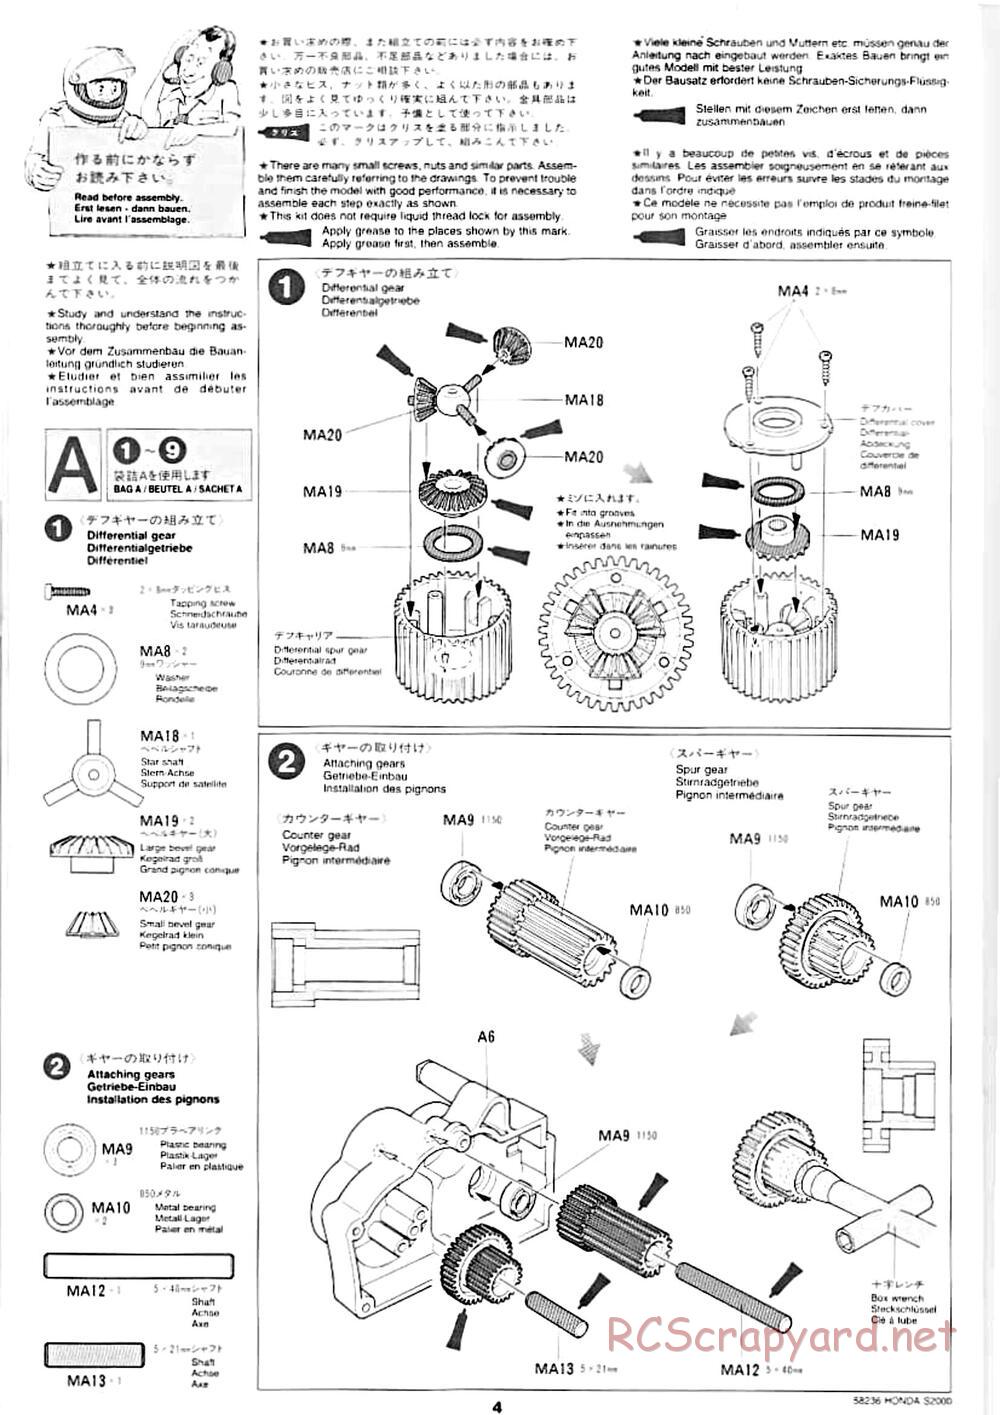 Tamiya - Honda S2000 - M04L Chassis - Manual - Page 2